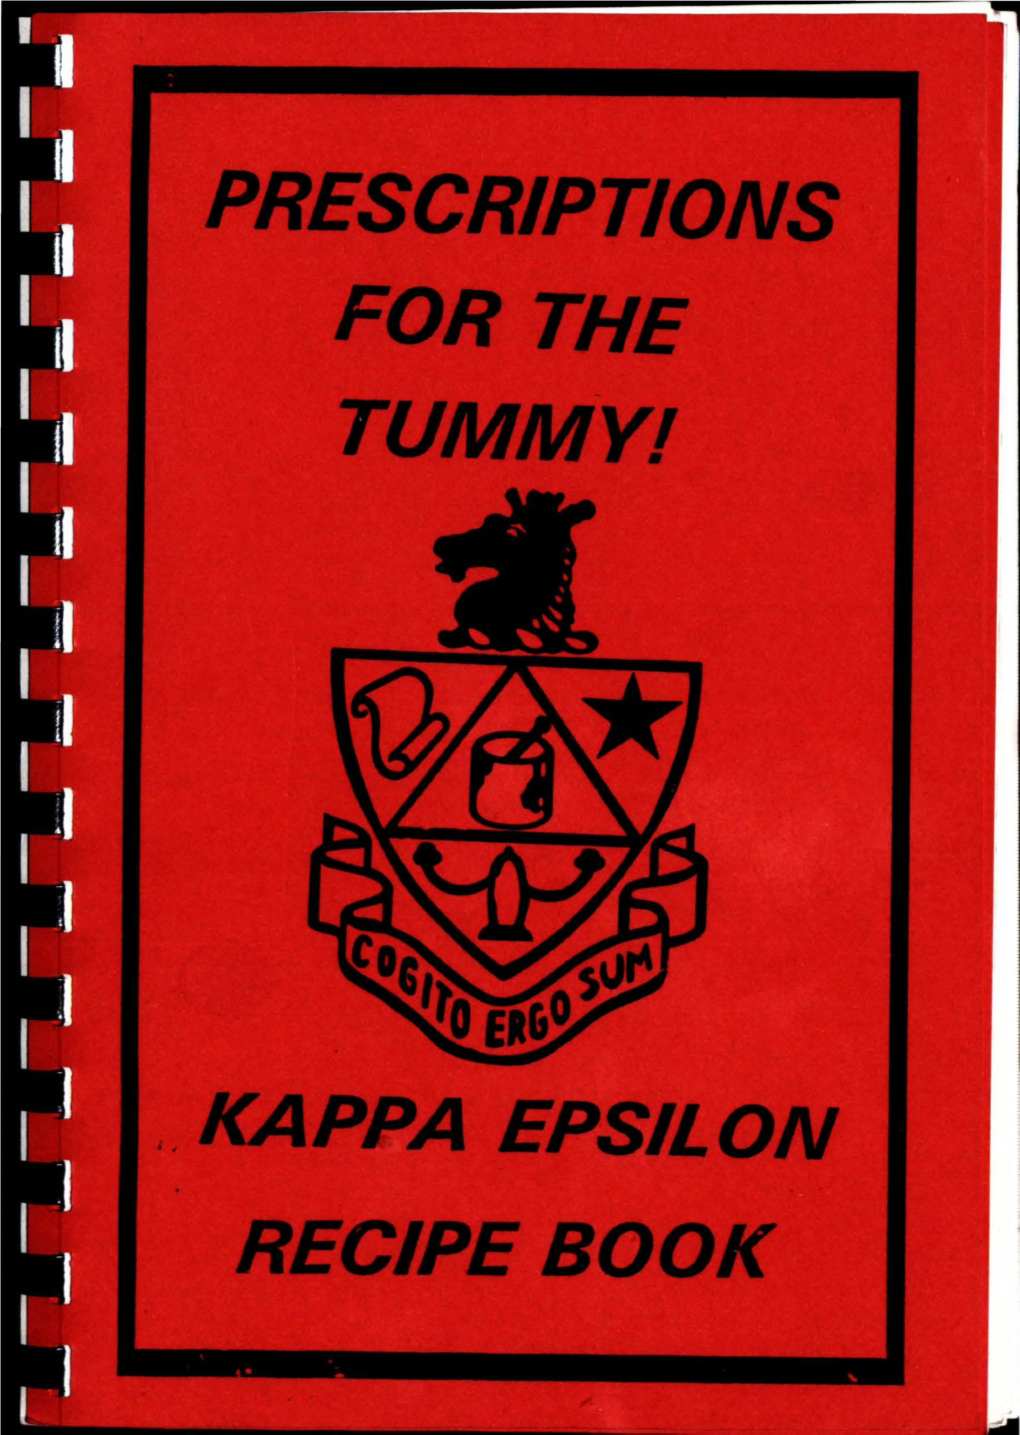 Prescriptions for the Tummy! : Kappa Epsilon Recipe Book